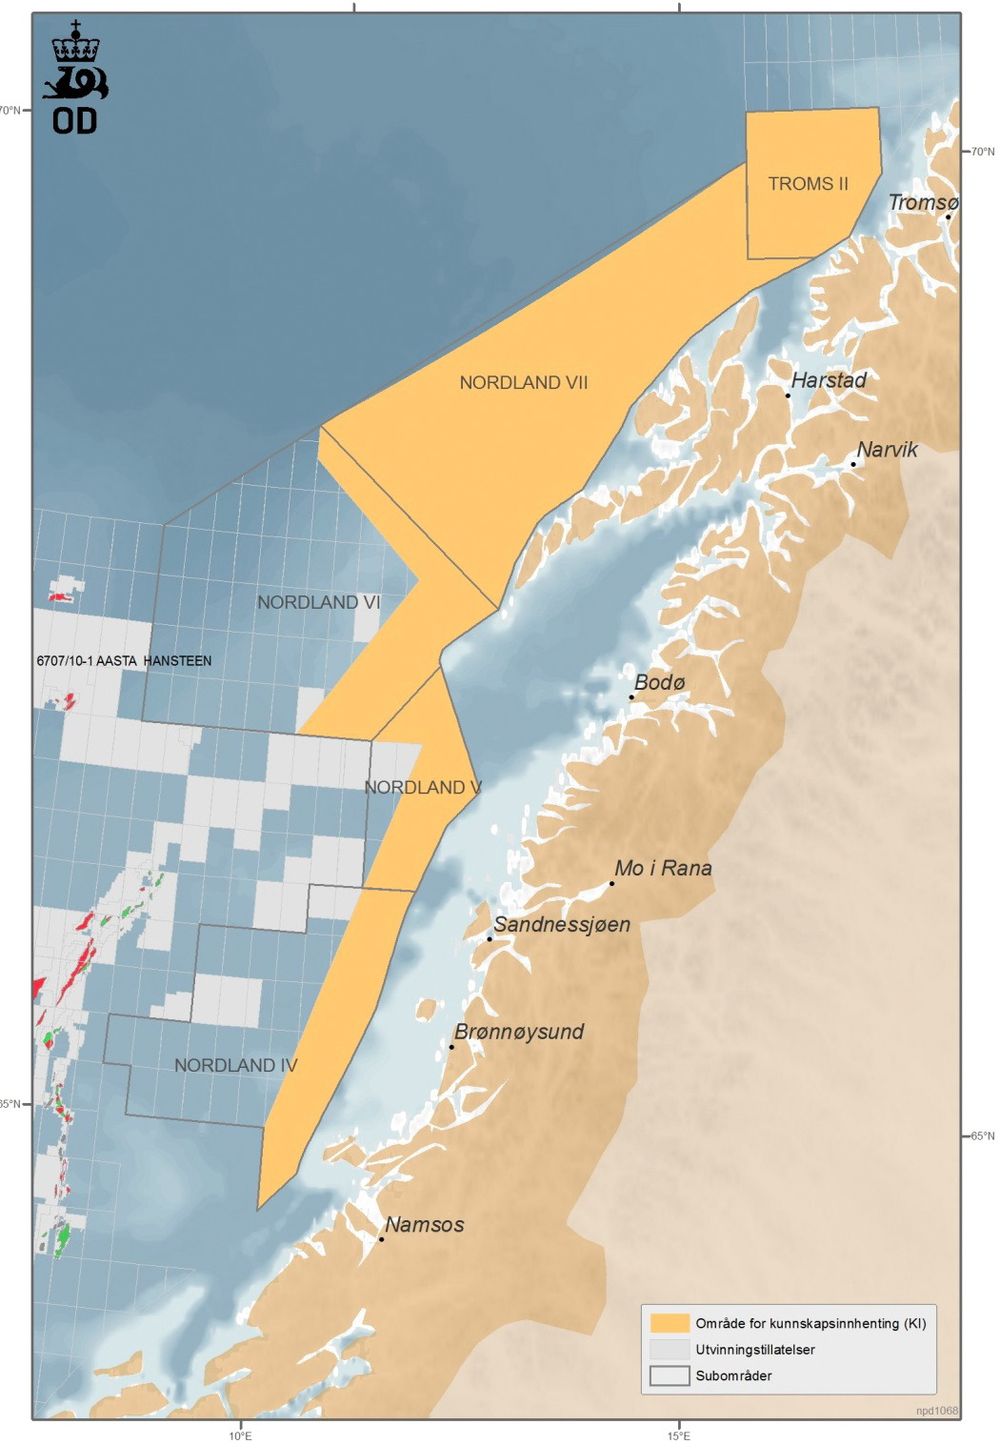 Åpnet: Den største delen av Nordland 6 er allerede åpnet for oljevirksomhet.